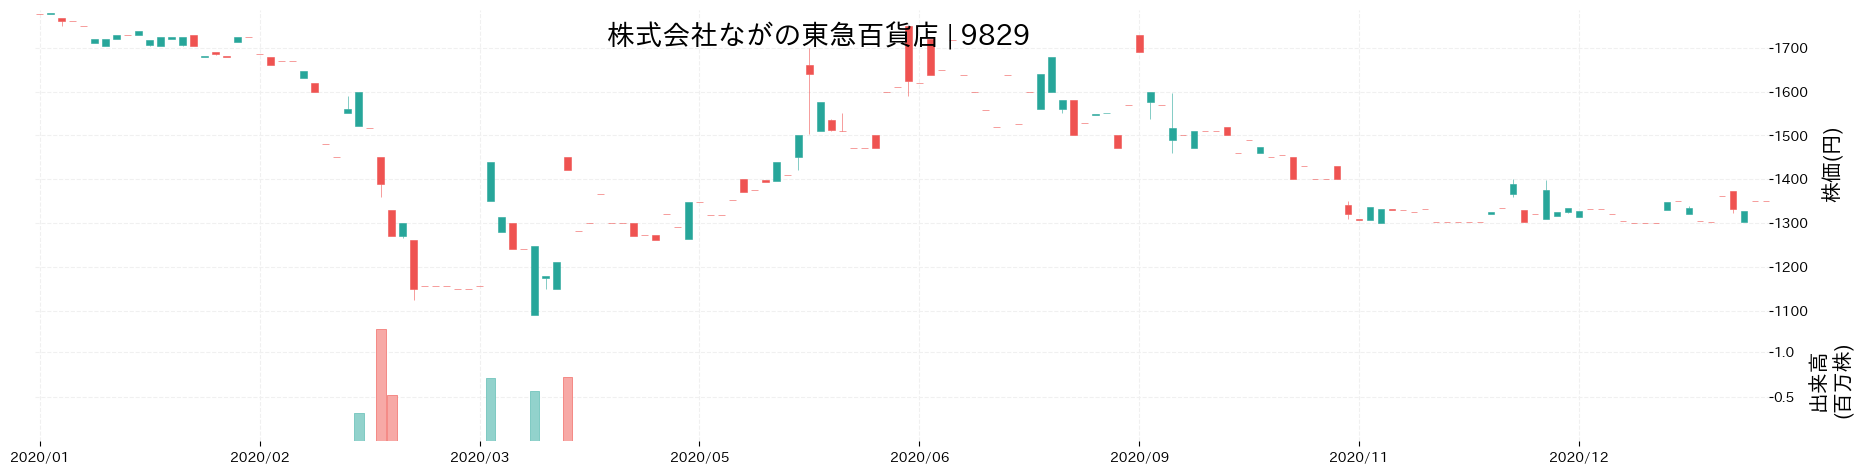 ながの東急百貨店の株価推移(2020)